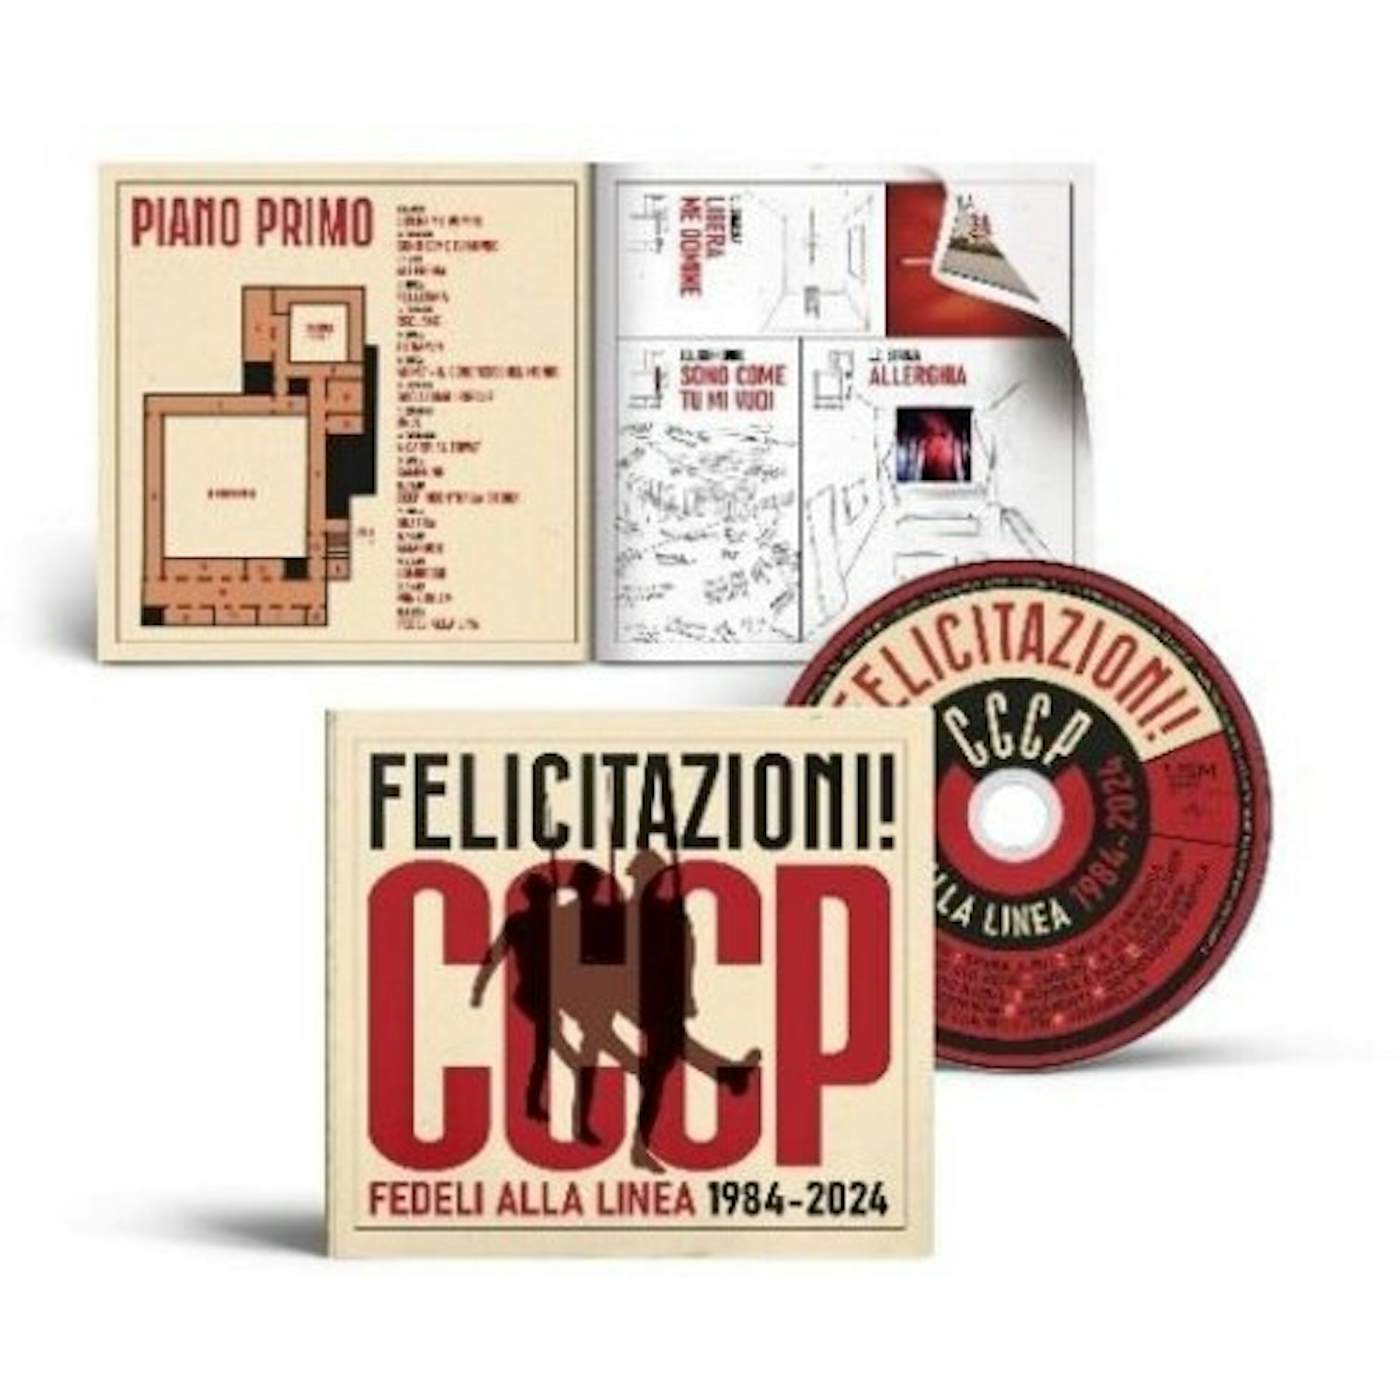 Cccp Fedeli Alla Linea Epica Etica Etnica Pathos 30th Annyversary (box Cd +  4 Stampe Fotografiche Ltd.) CD